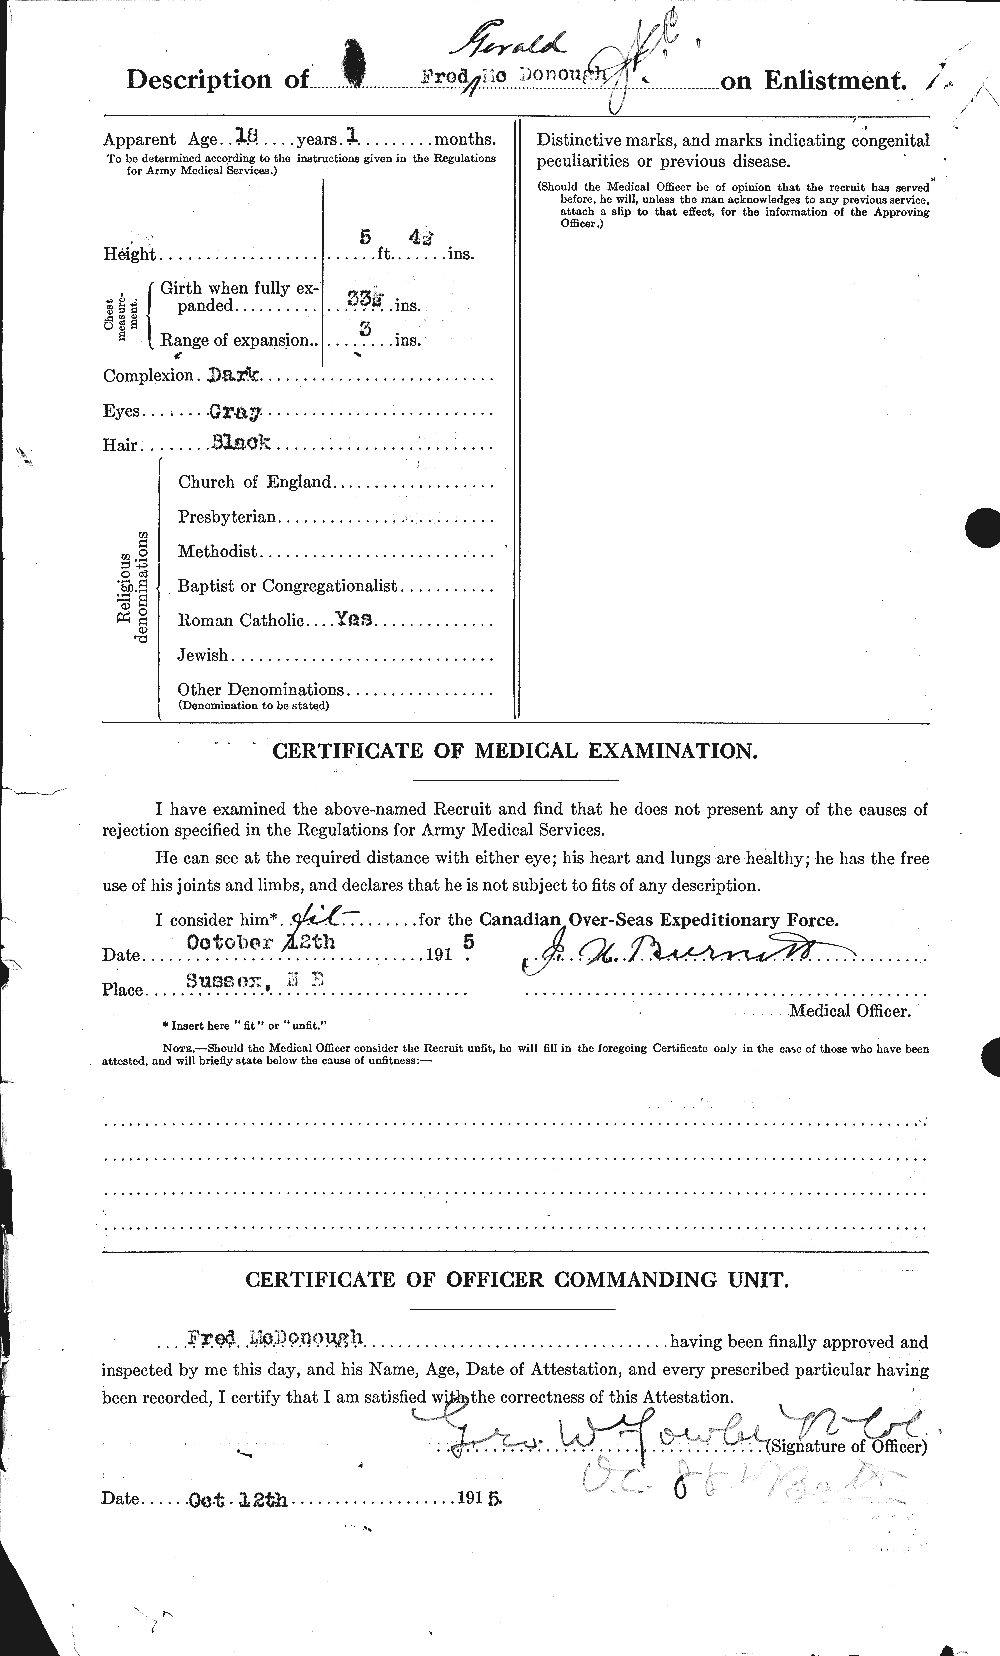 Dossiers du Personnel de la Première Guerre mondiale - CEC 525109b